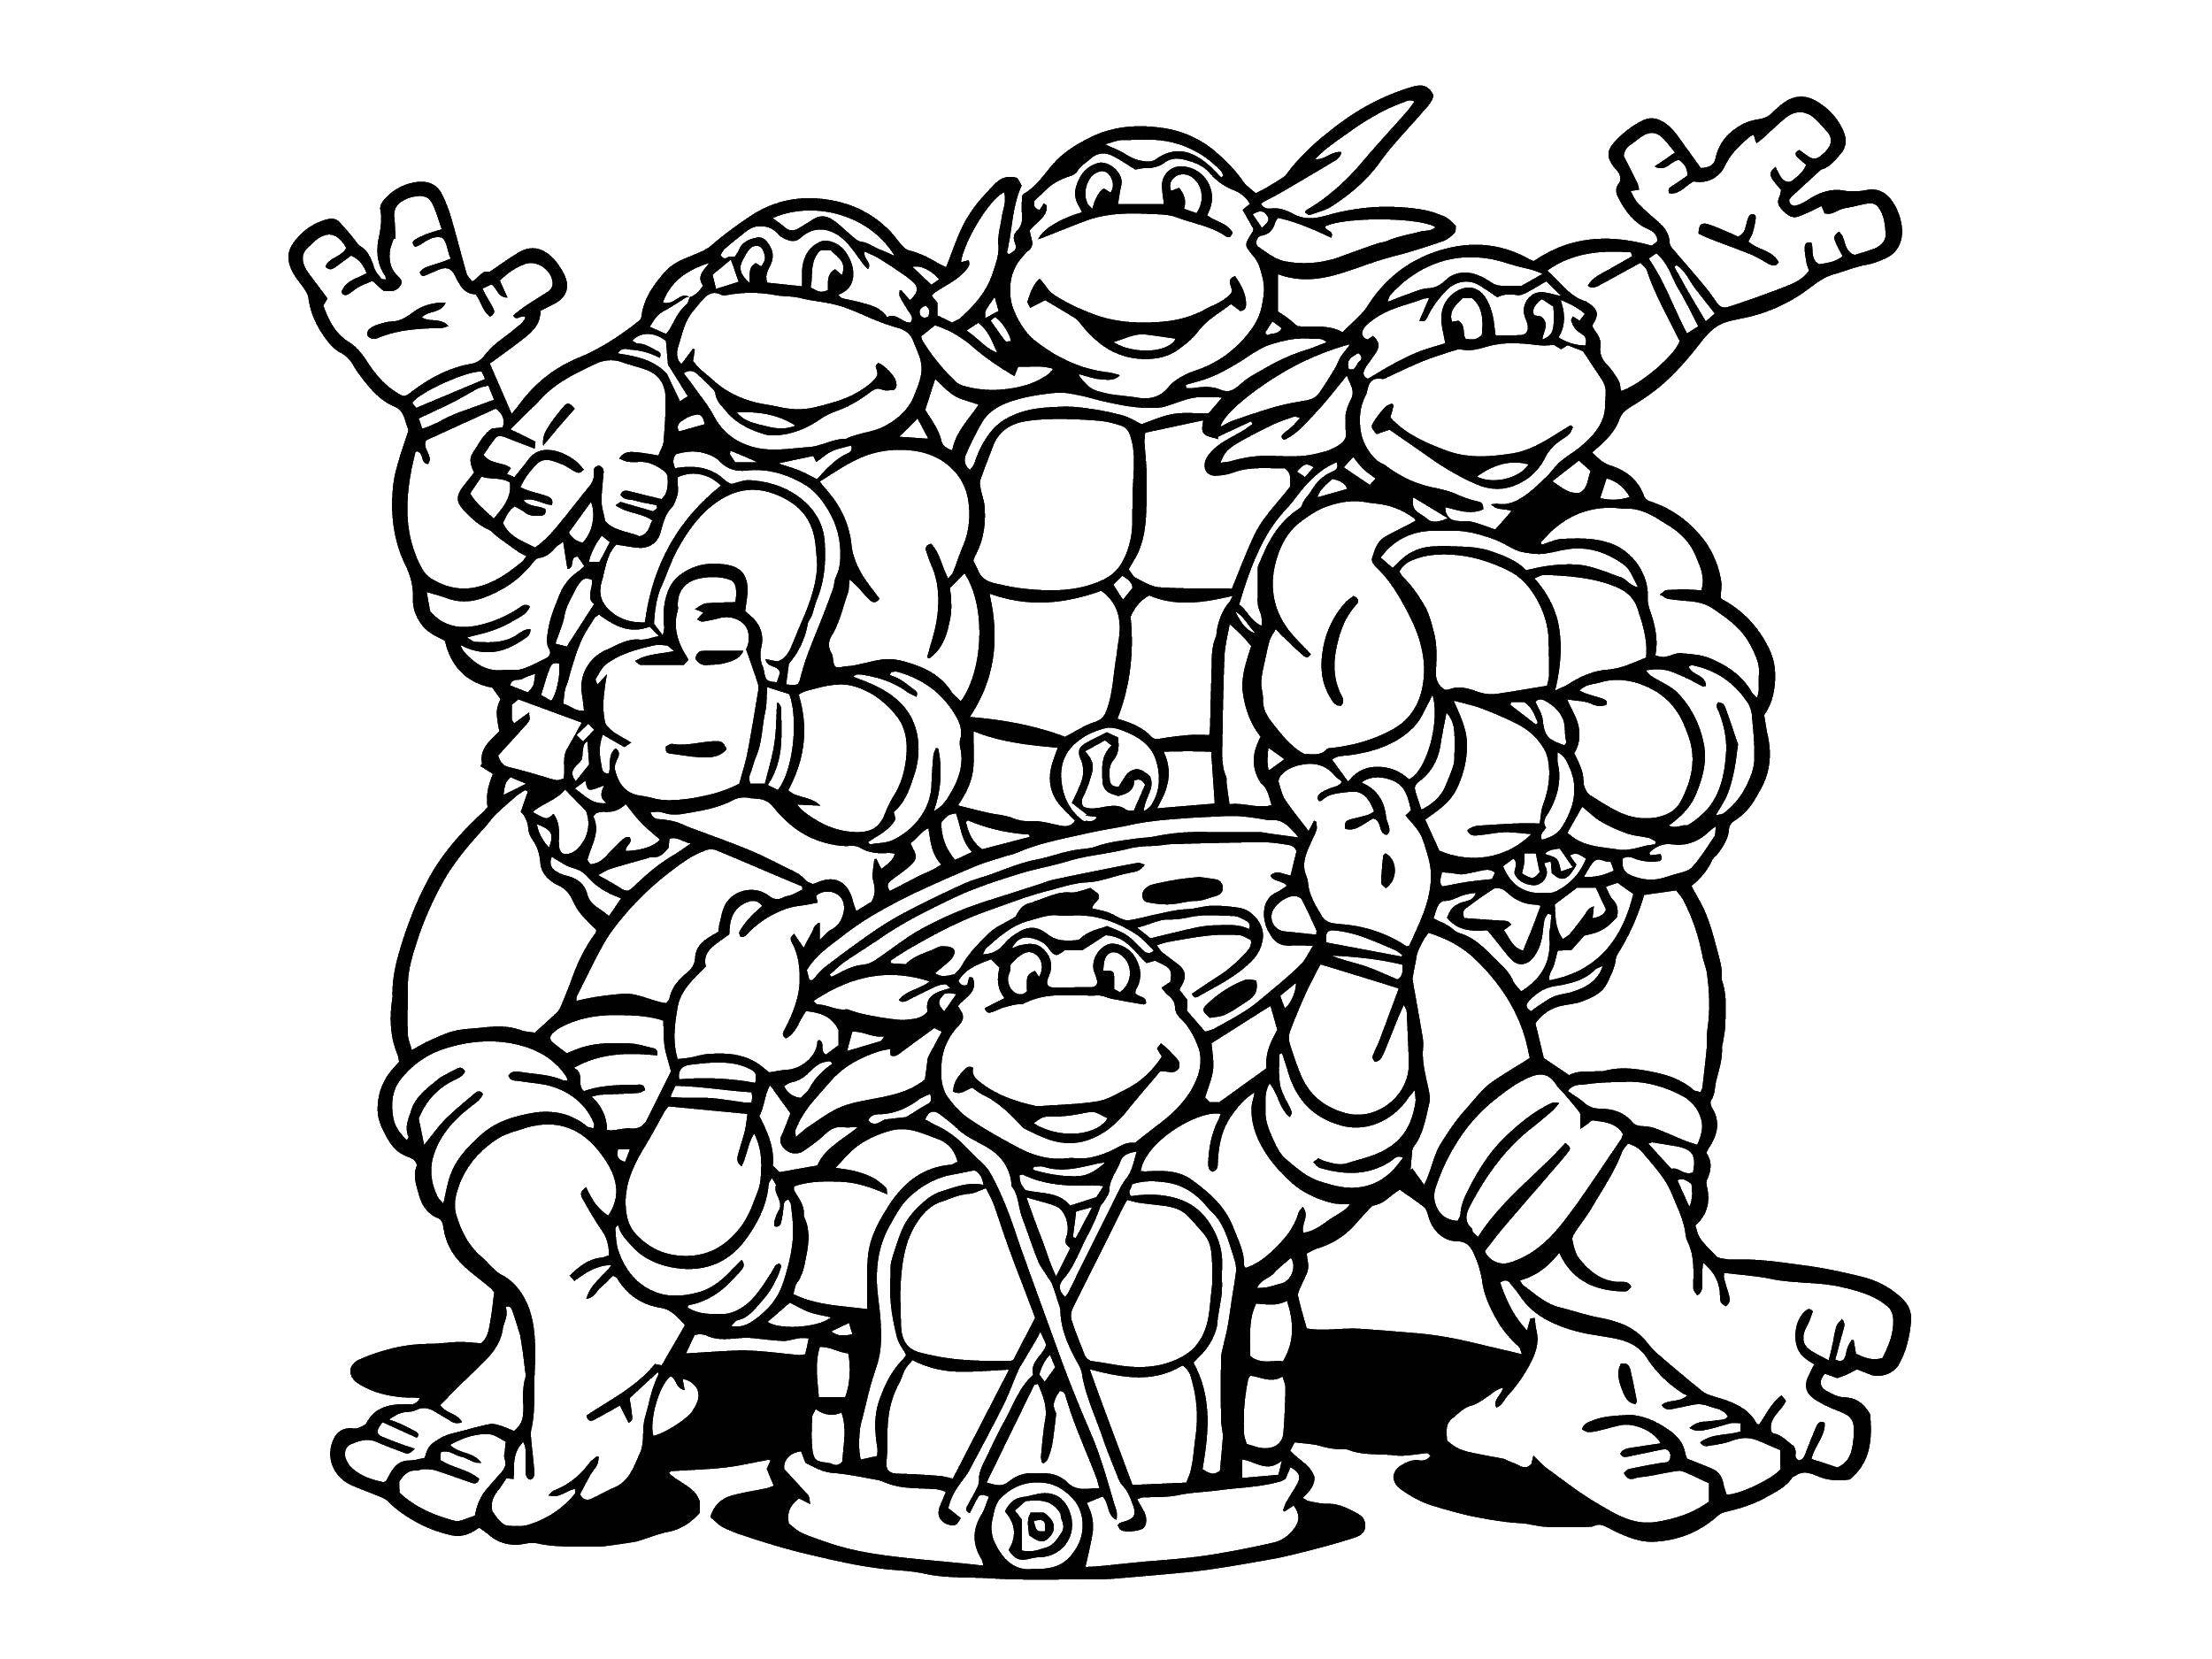 Coloring Ninja turtles best friends. Category teenage mutant ninja turtles. Tags:  Comics, Teenage Mutant Ninja Turtles.